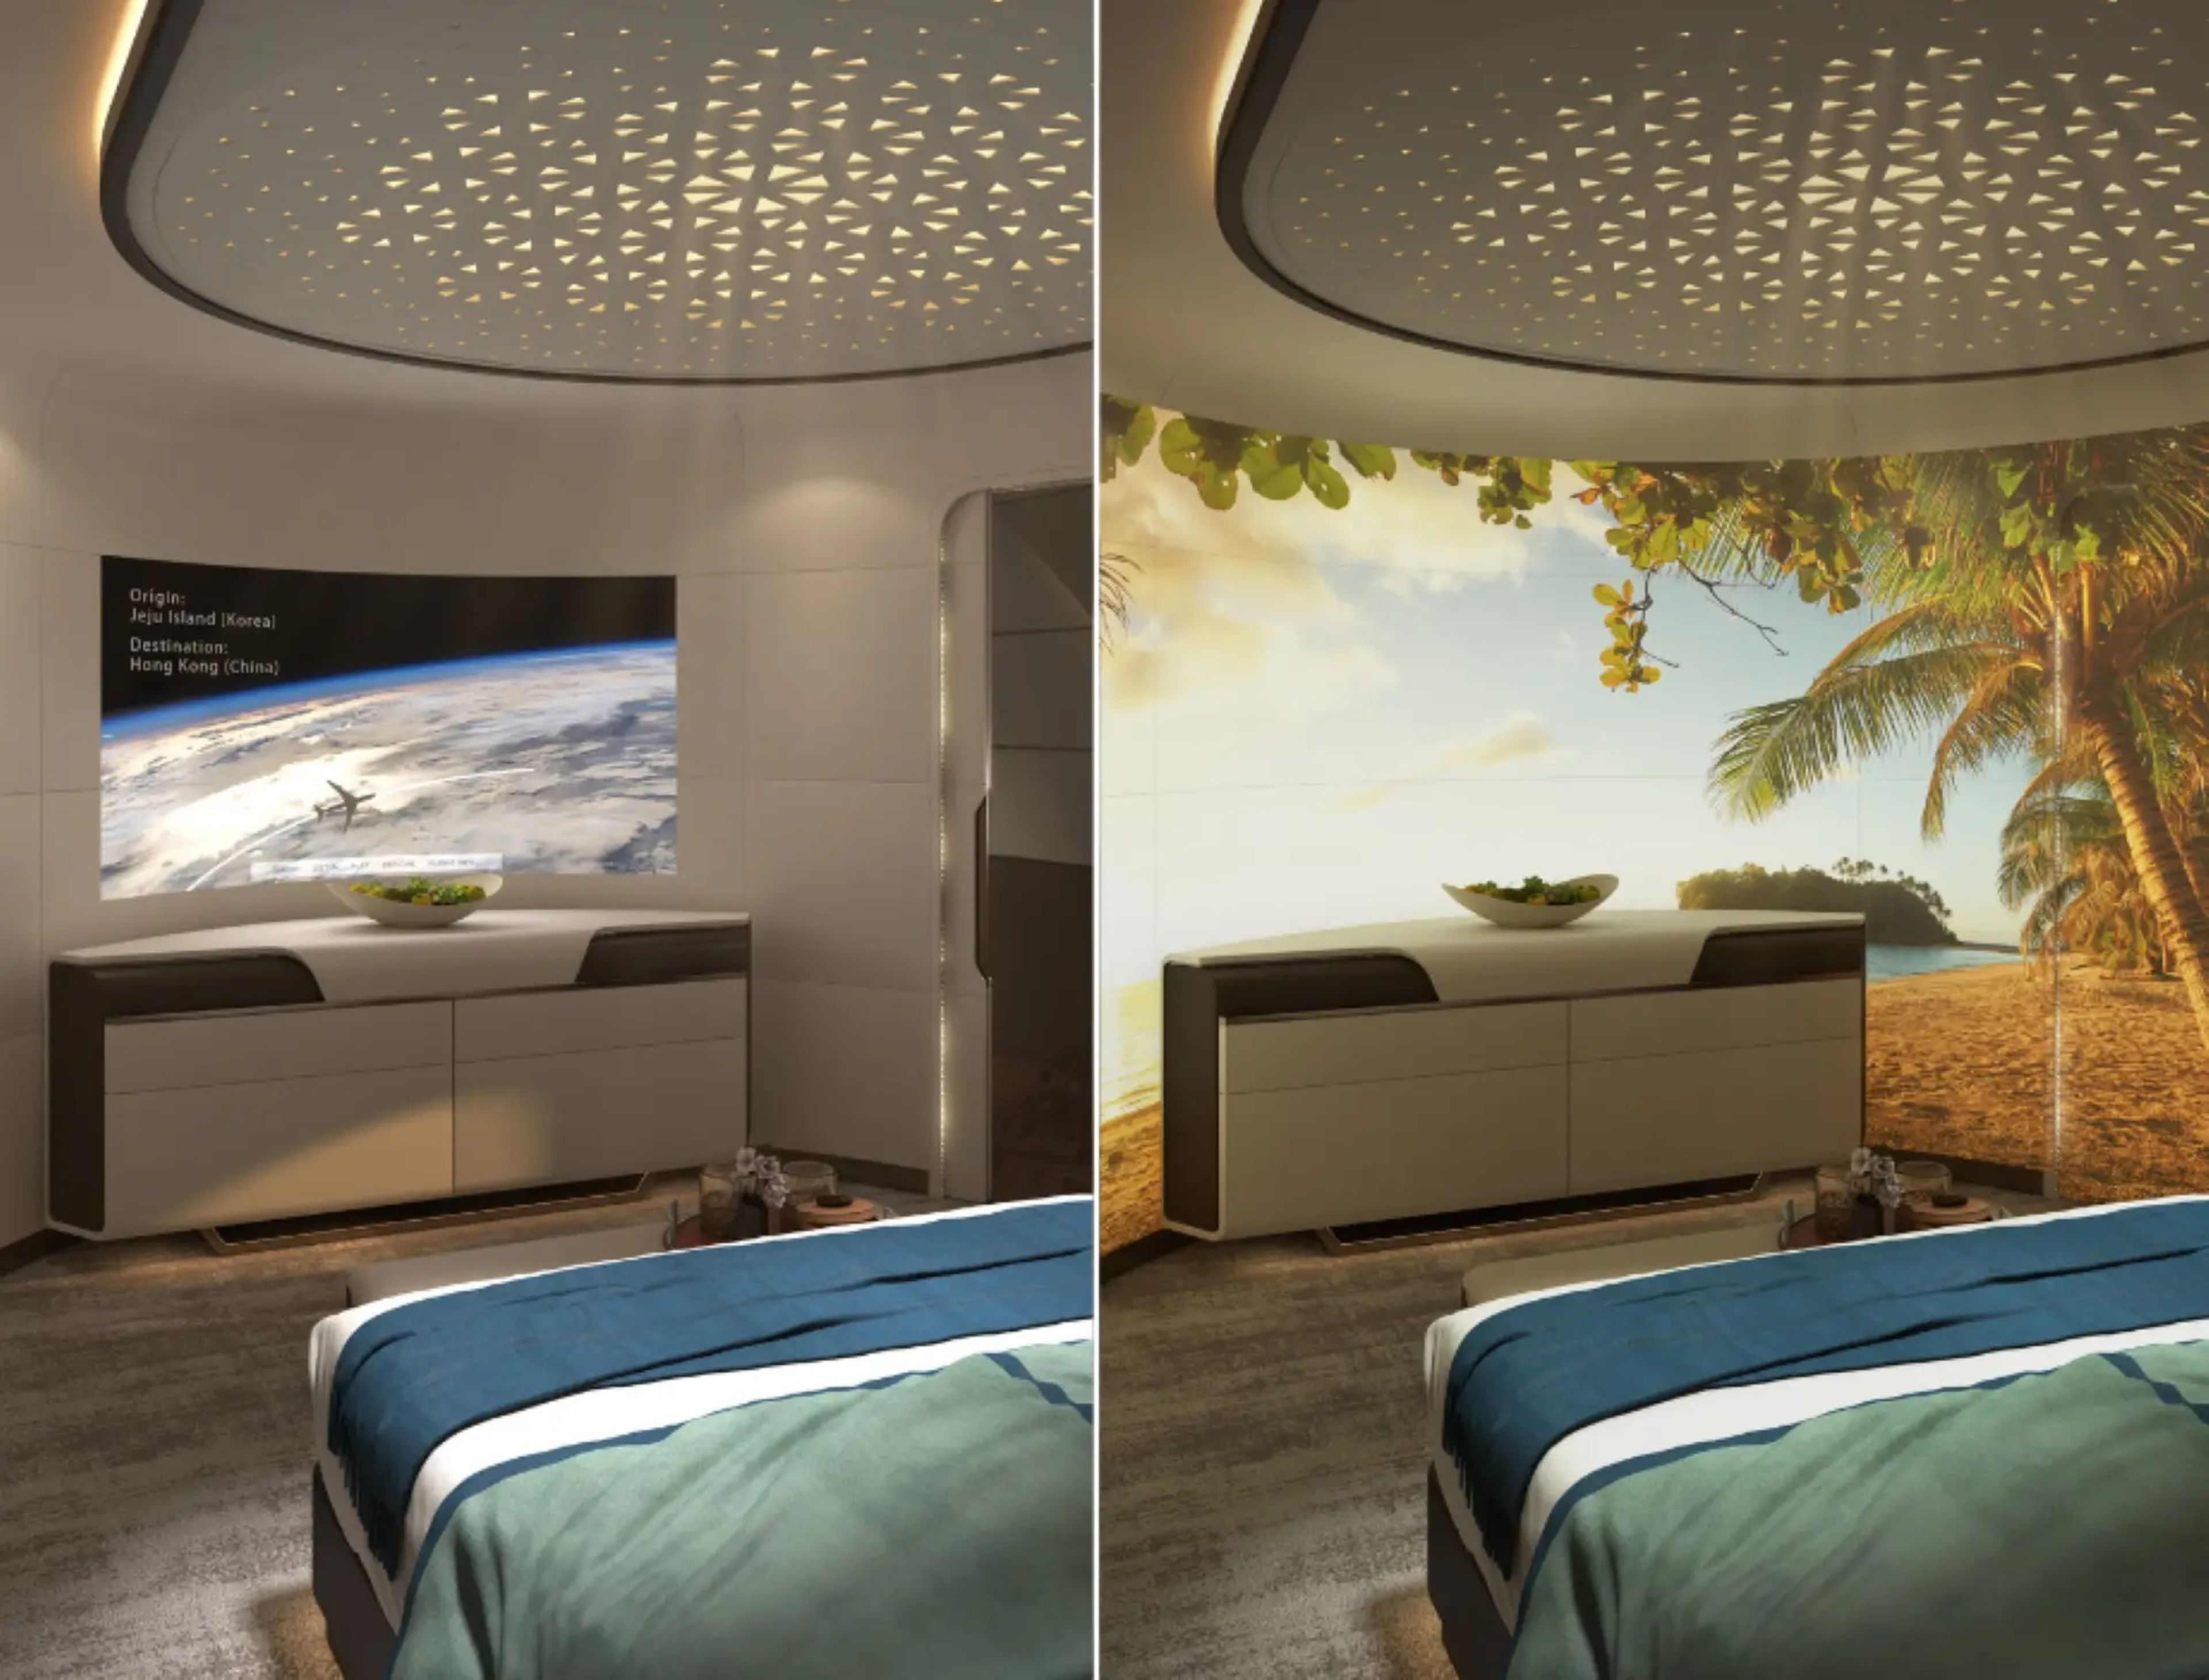 Los pasajeros disponen de opciones como una televisión o una obra de arte digital de 180 grados en la curva de la pared del dormitorio.